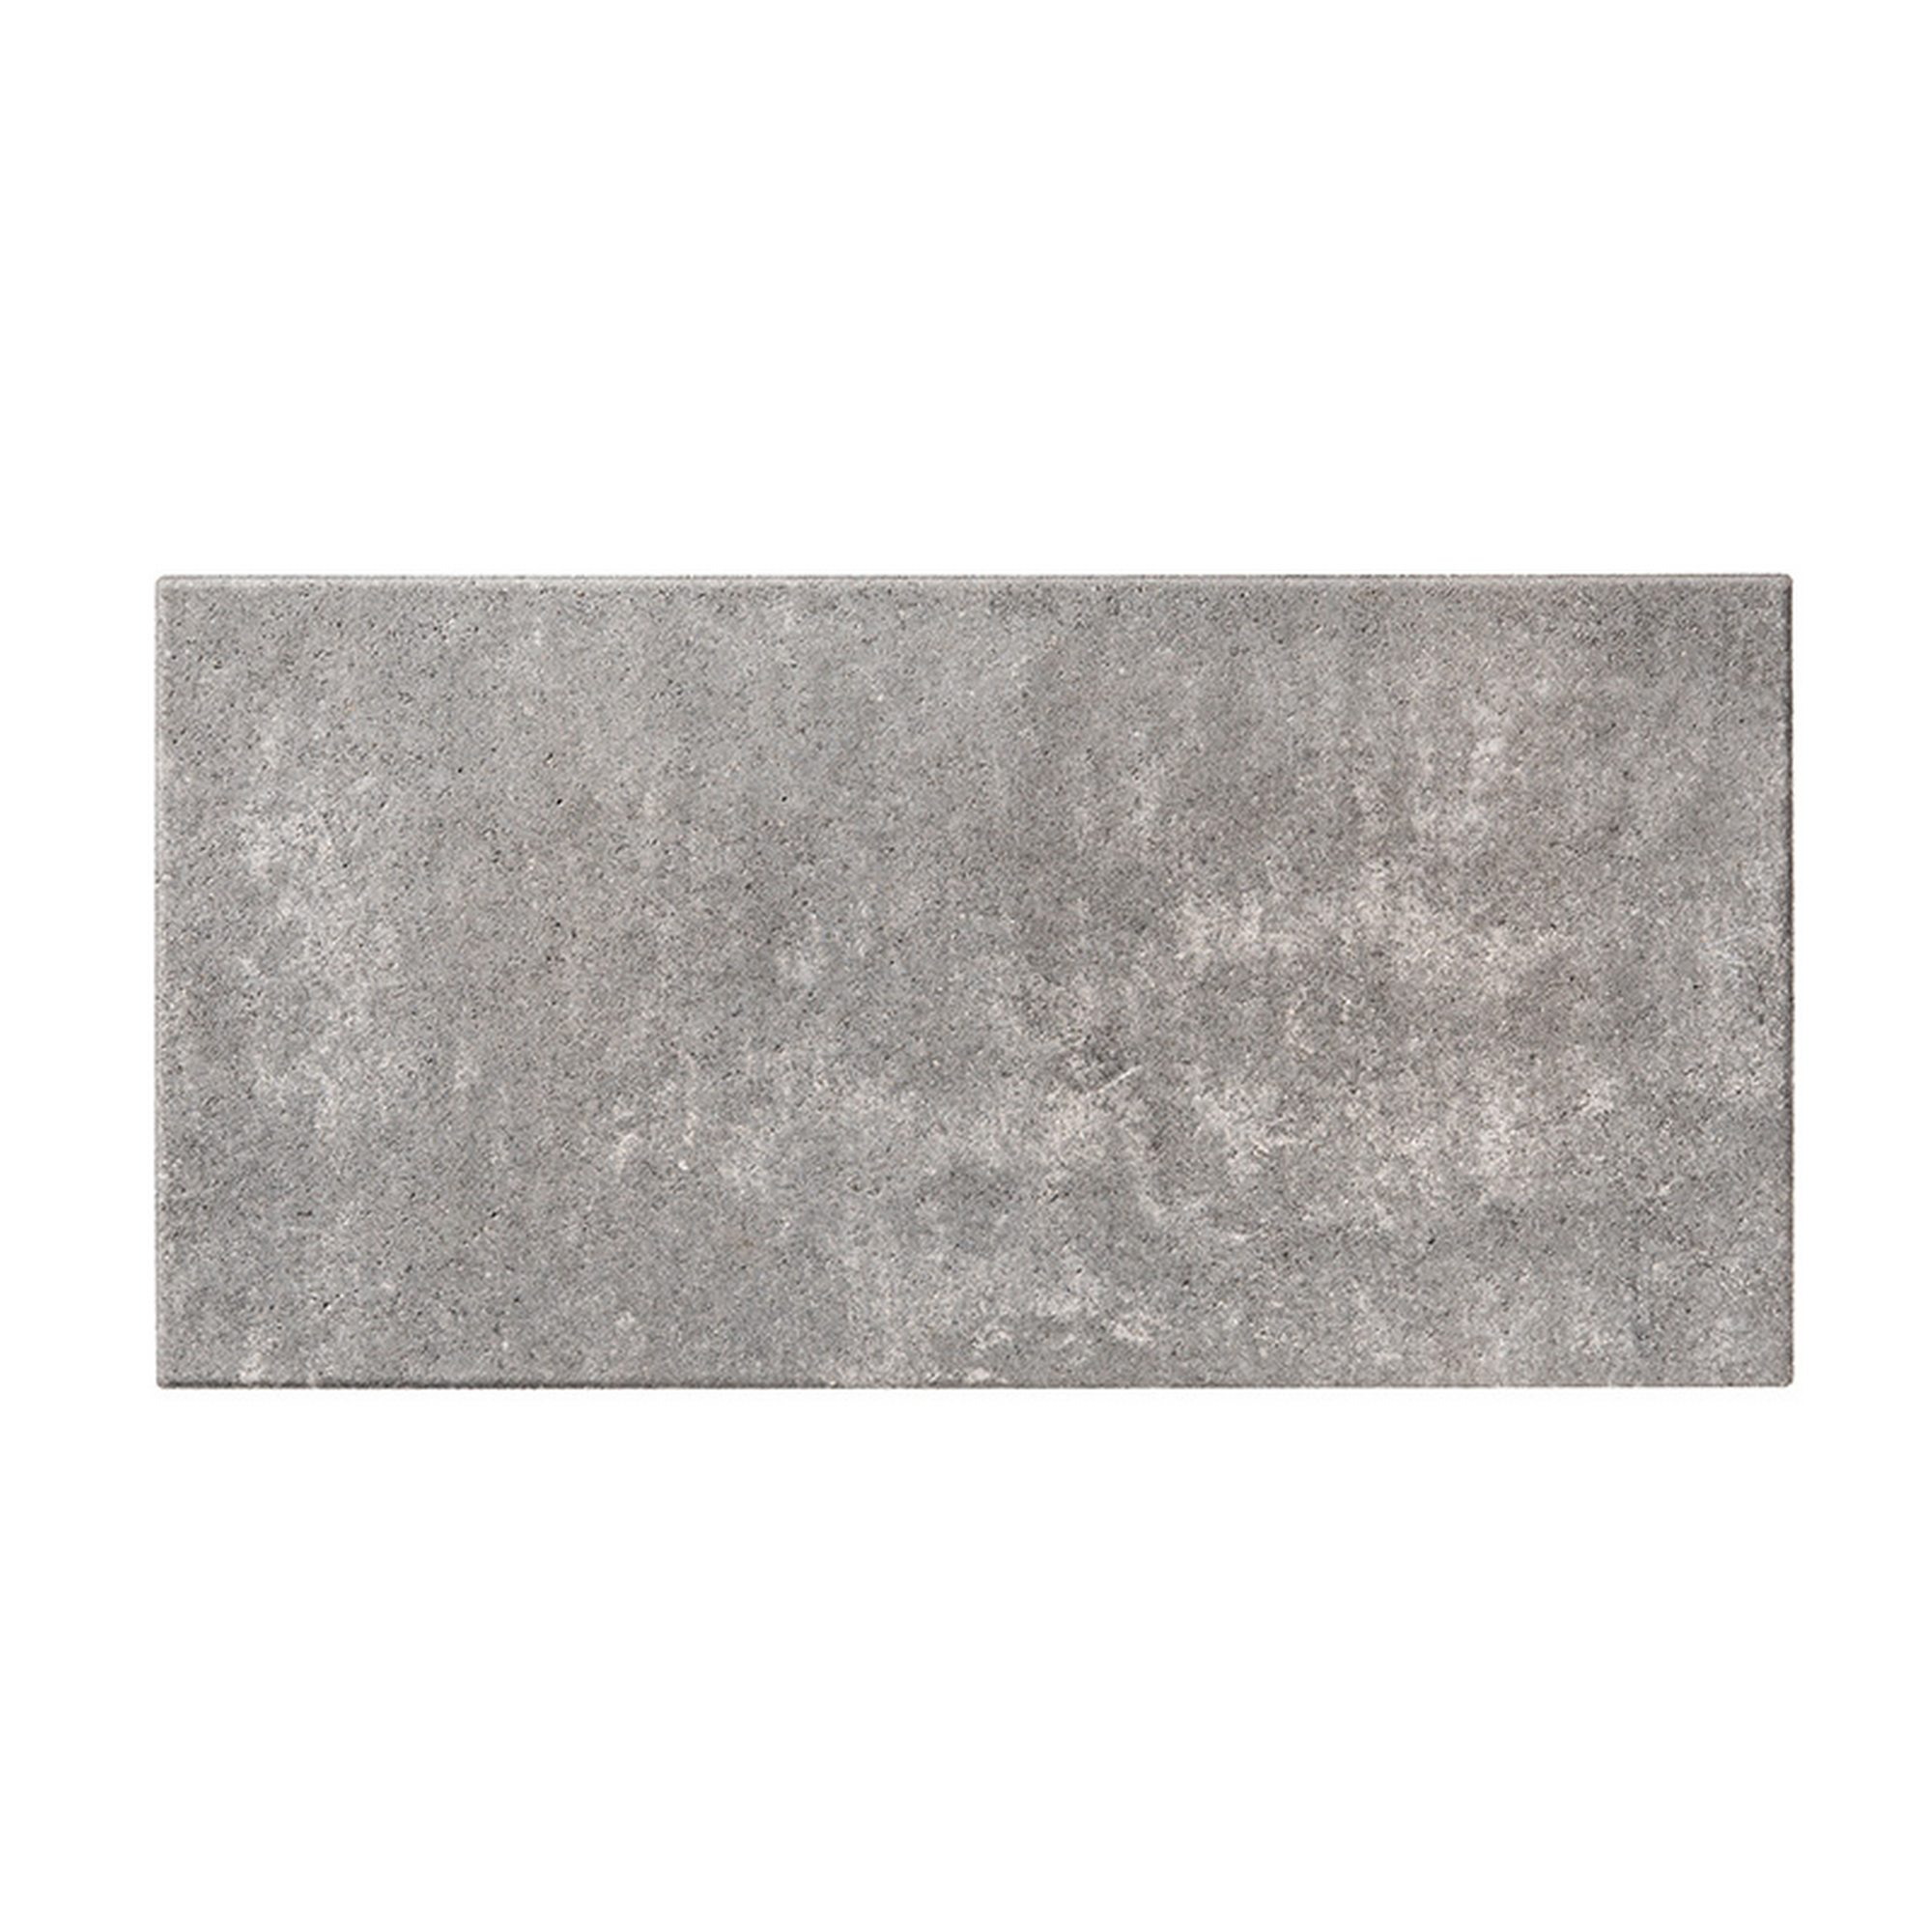 Terrassenplatte 'T-Court Grade' Beton schwarz/weiß 60 x 30 x 4 cm + product picture